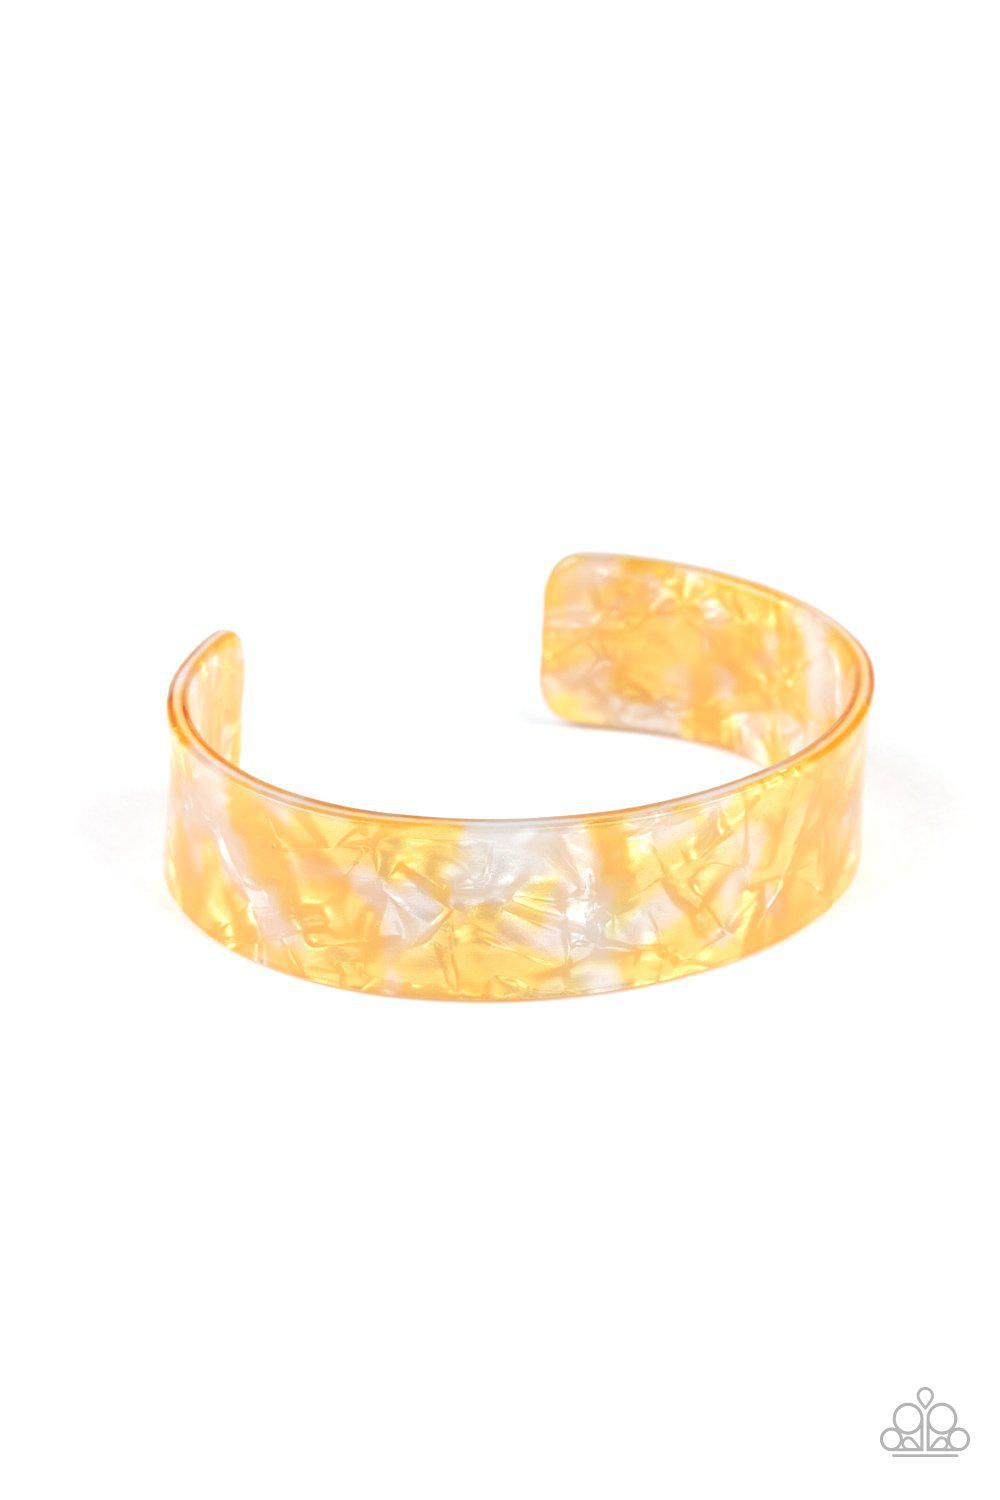 Glaze Daze Yellow Acrylic Cuff Bracelet - Paparazzi Accessories-CarasShop.com - $5 Jewelry by Cara Jewels